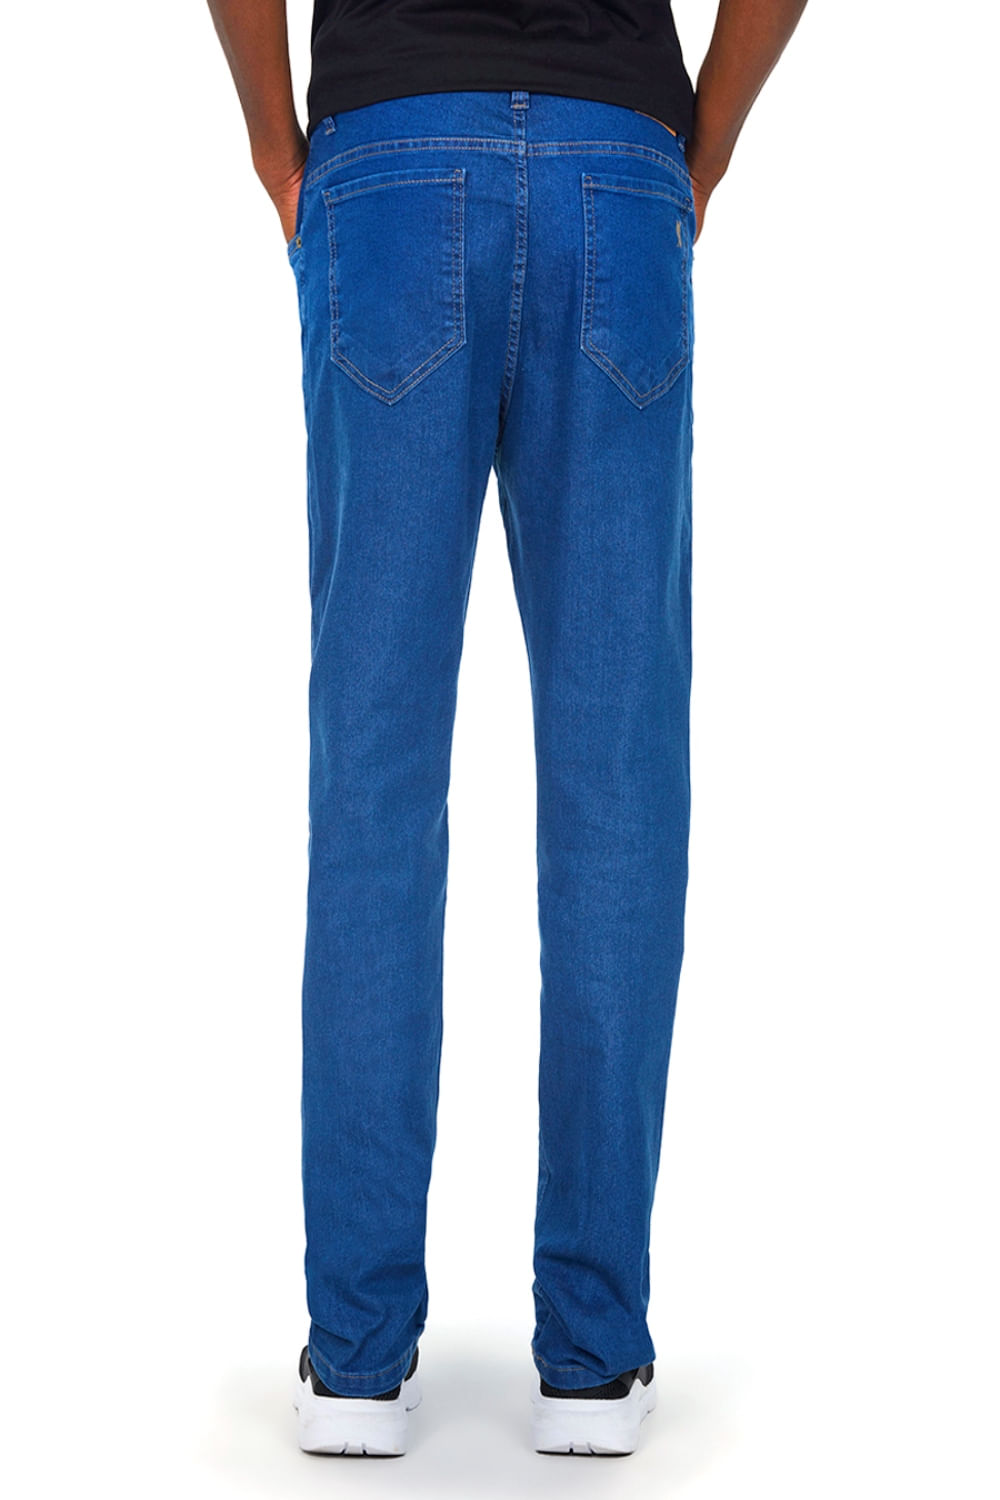 Calça Masculina Jeans Regular Polo Wear - Polo Wear